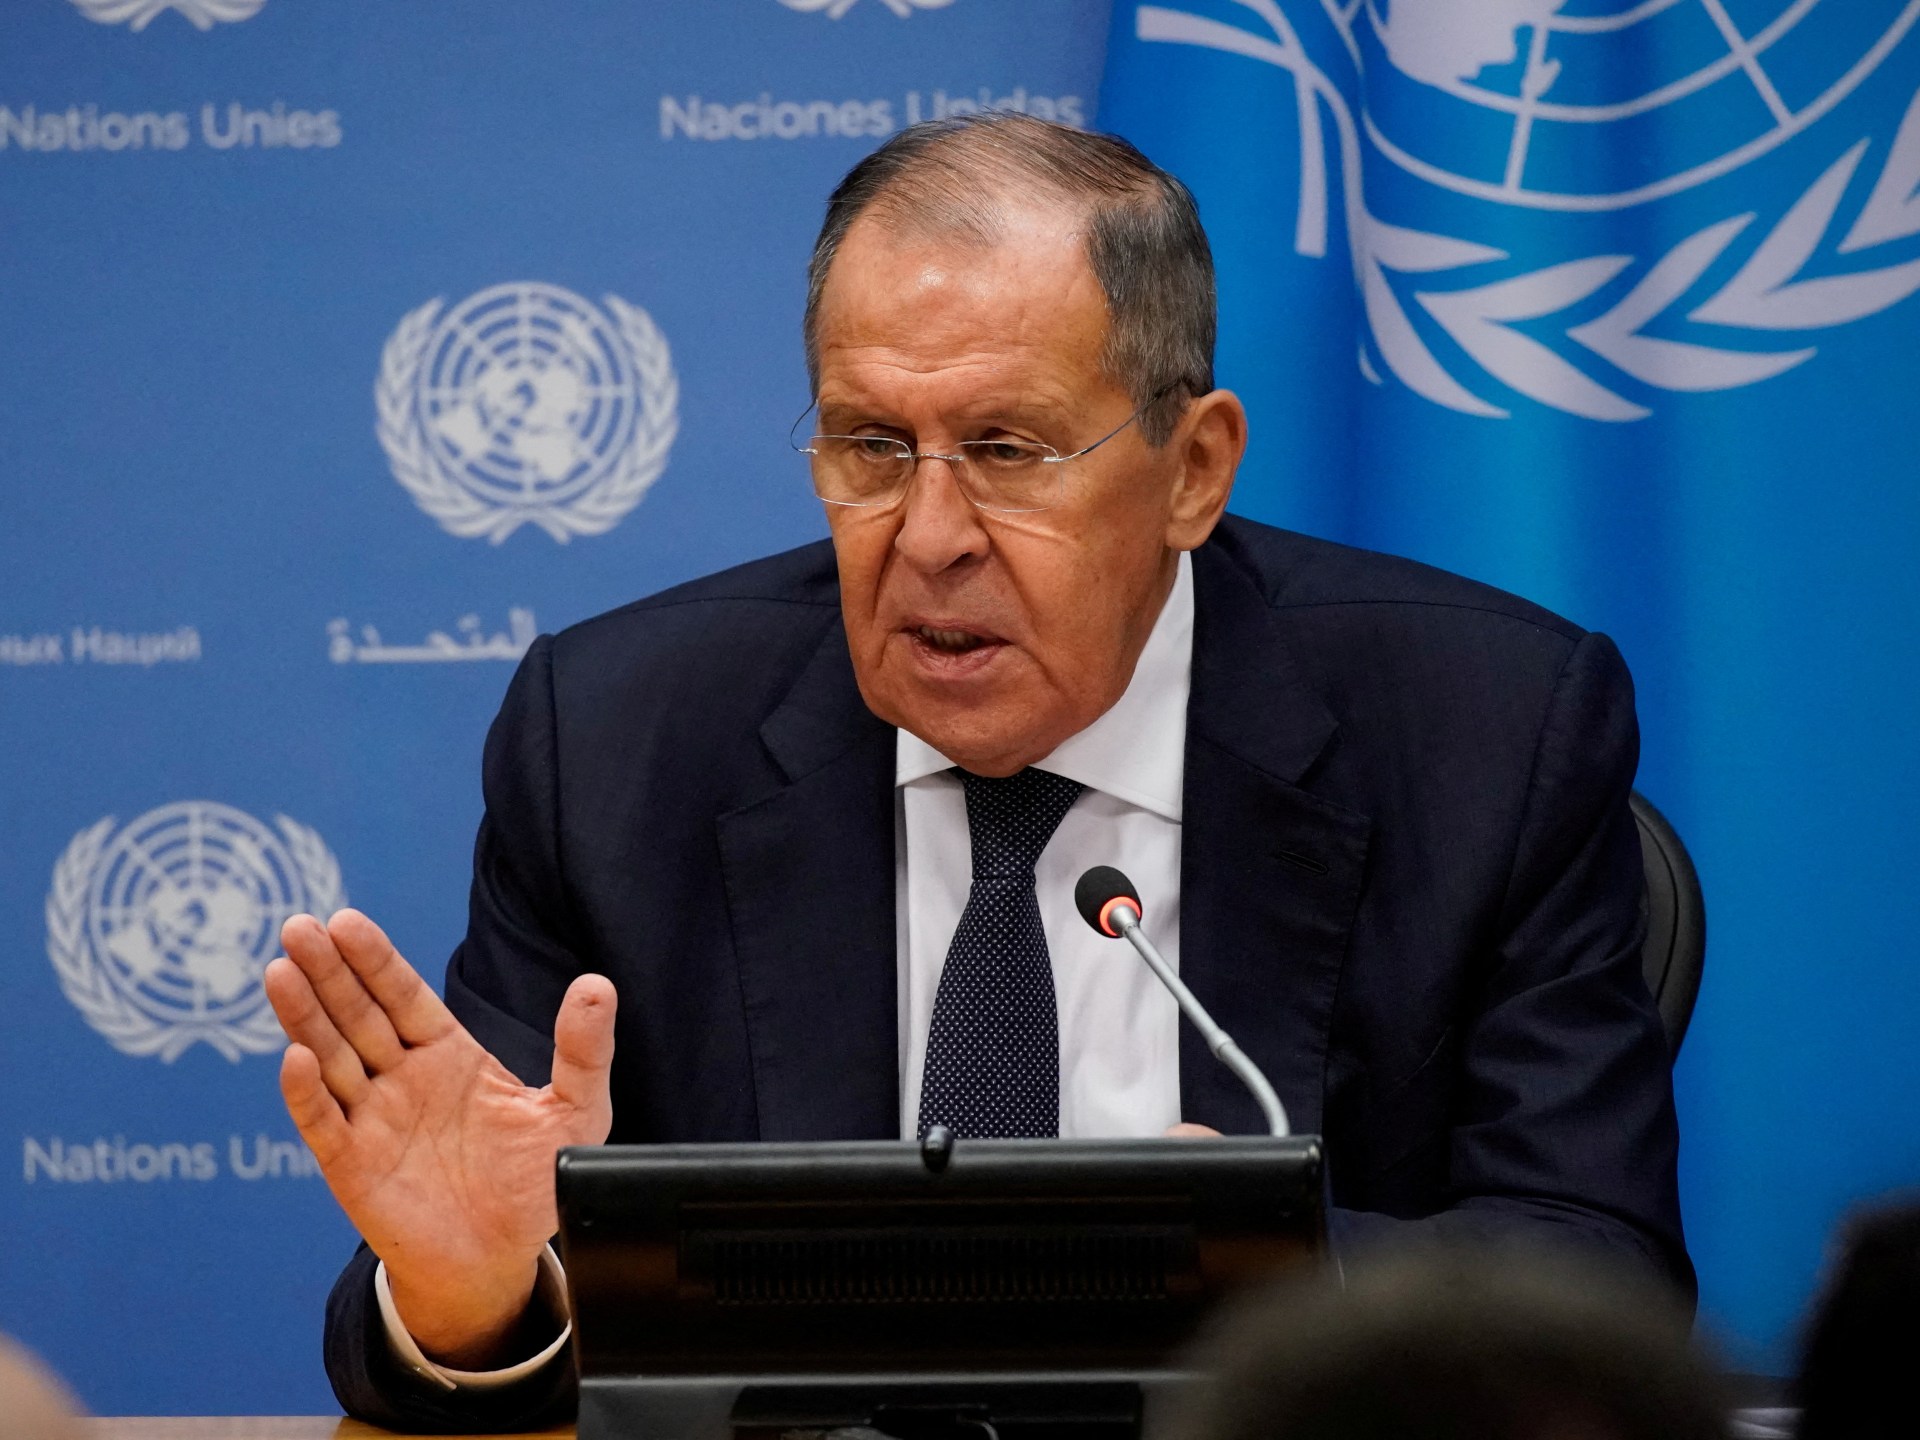 “Empire of Lies”: Lavrov Rusia mengkritik Barat dalam pidatonya di PBB |  Berita tentang perang Rusia-Ukraina